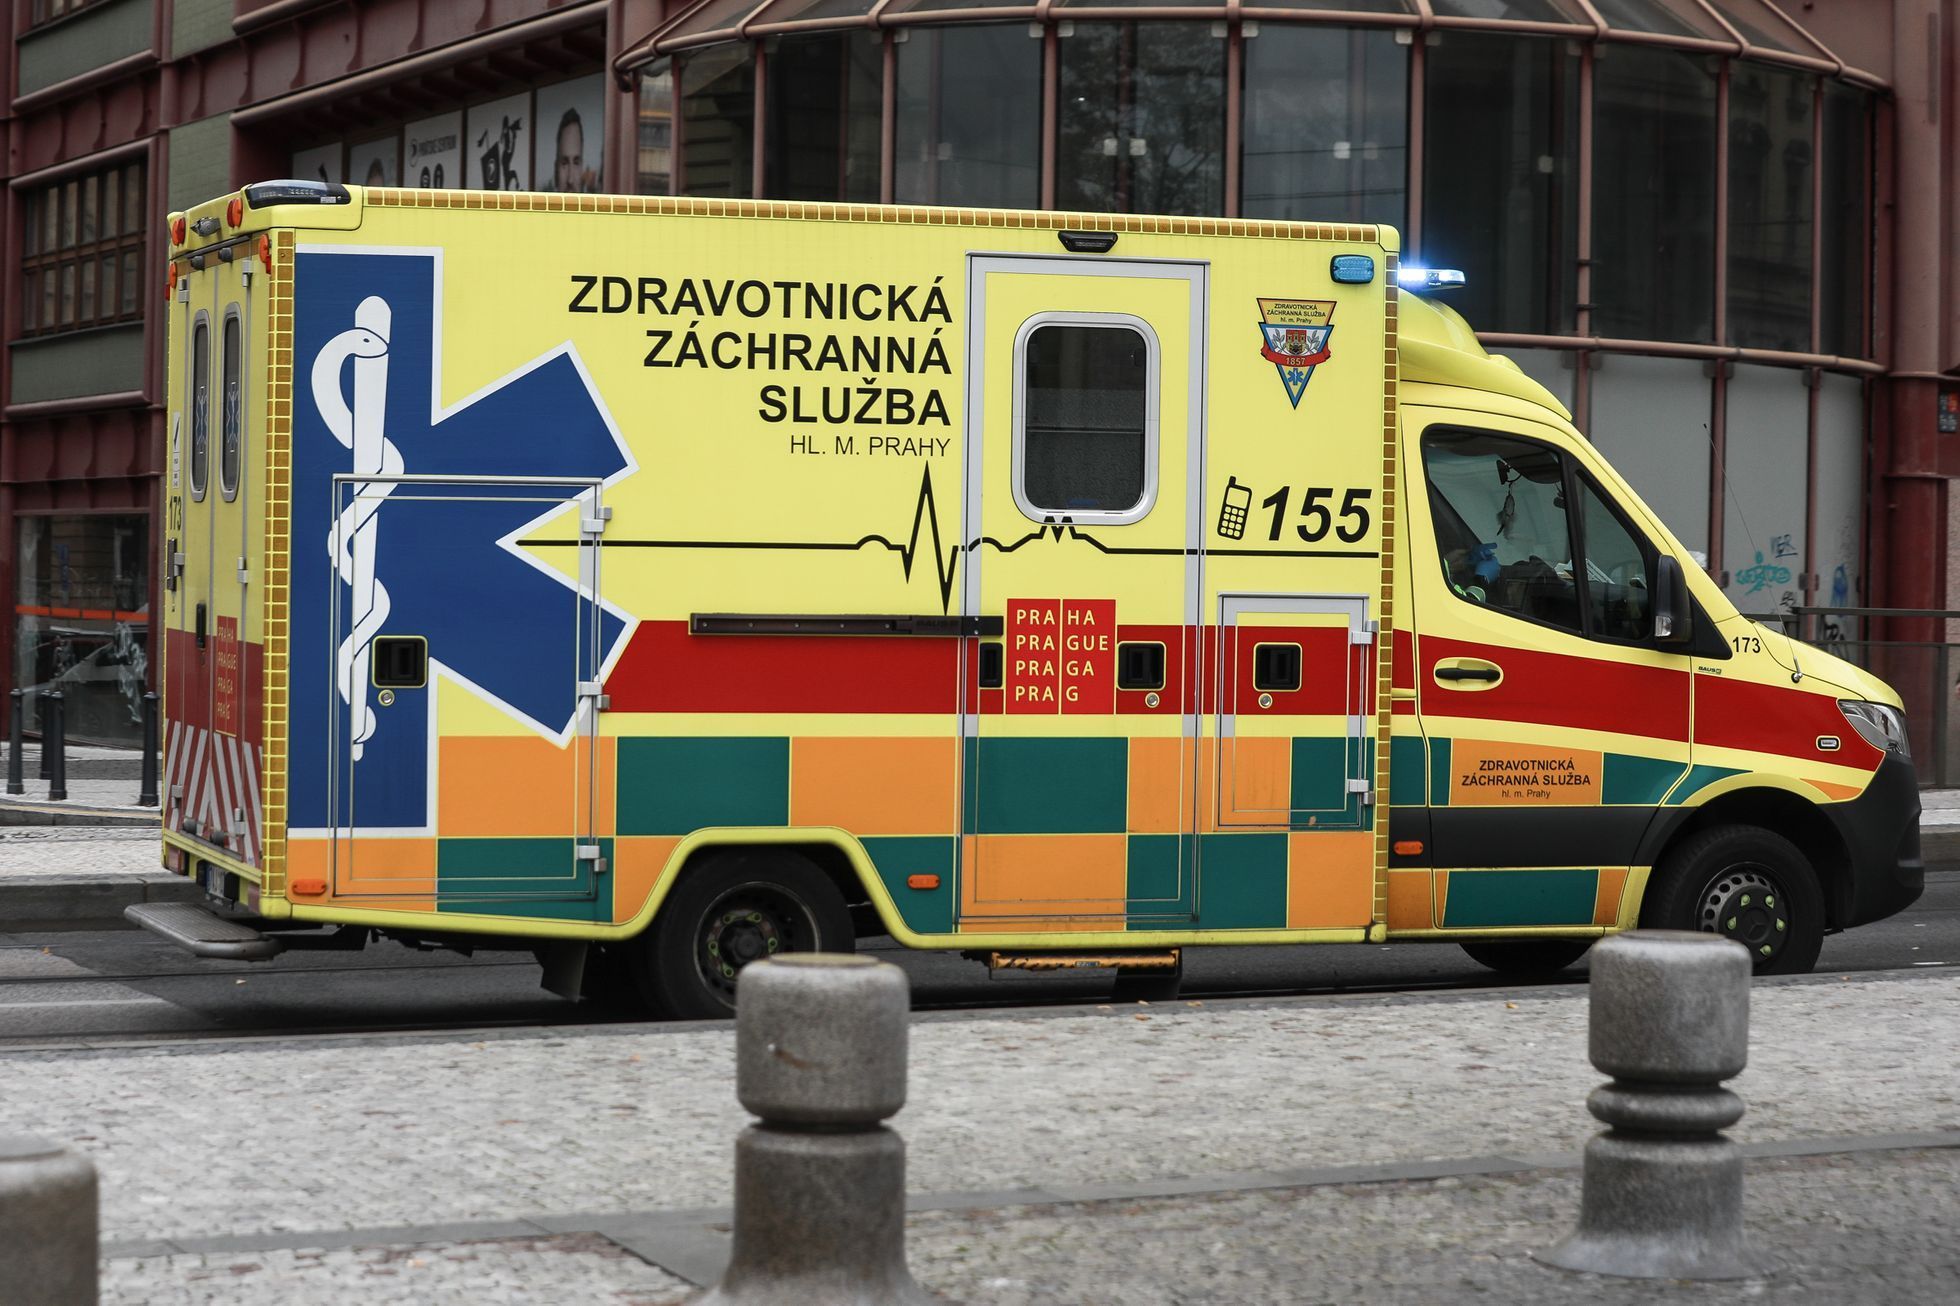 Záchranná služba, ambulance, sanitka, nehoda, 155, zdravotník, zdravotnictví - ilustrační foto